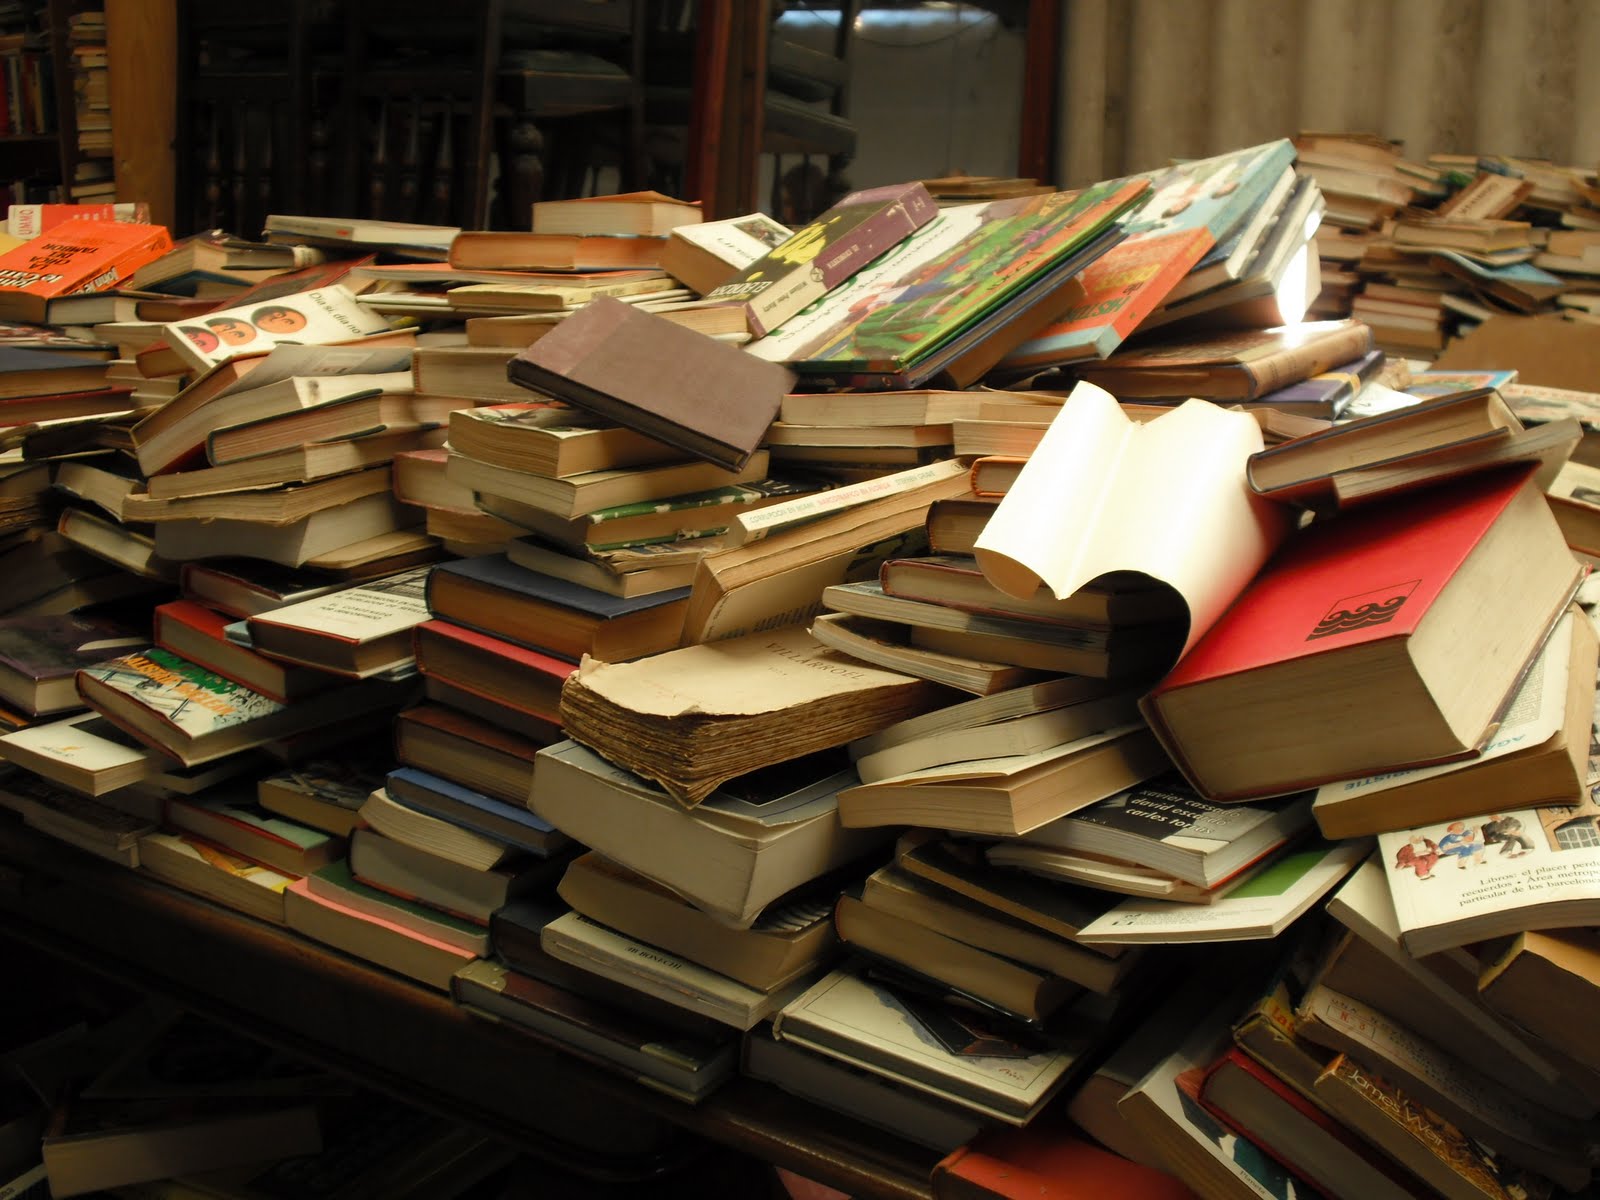 Пятистами книгами. Куча книг. Стопка книг. Стол заваленный книгами. Груда книг.